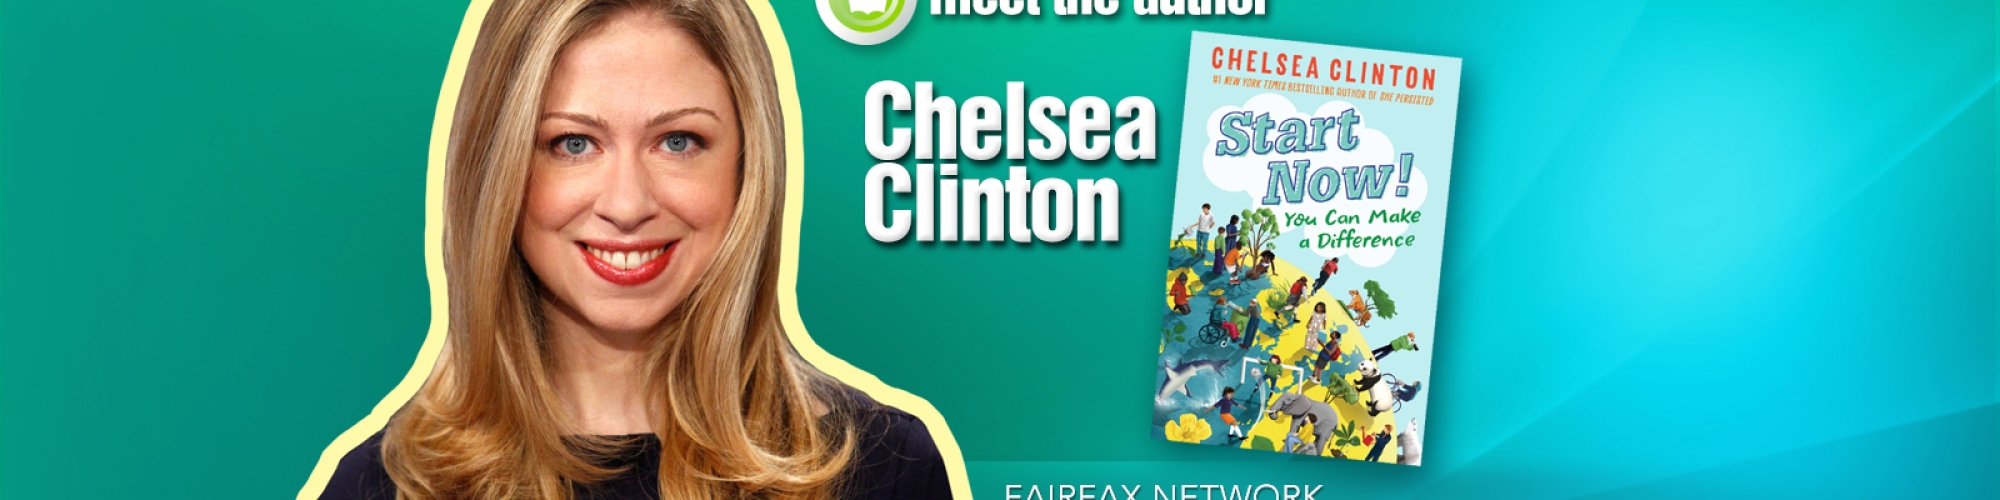 MTA Chelsea Clinton